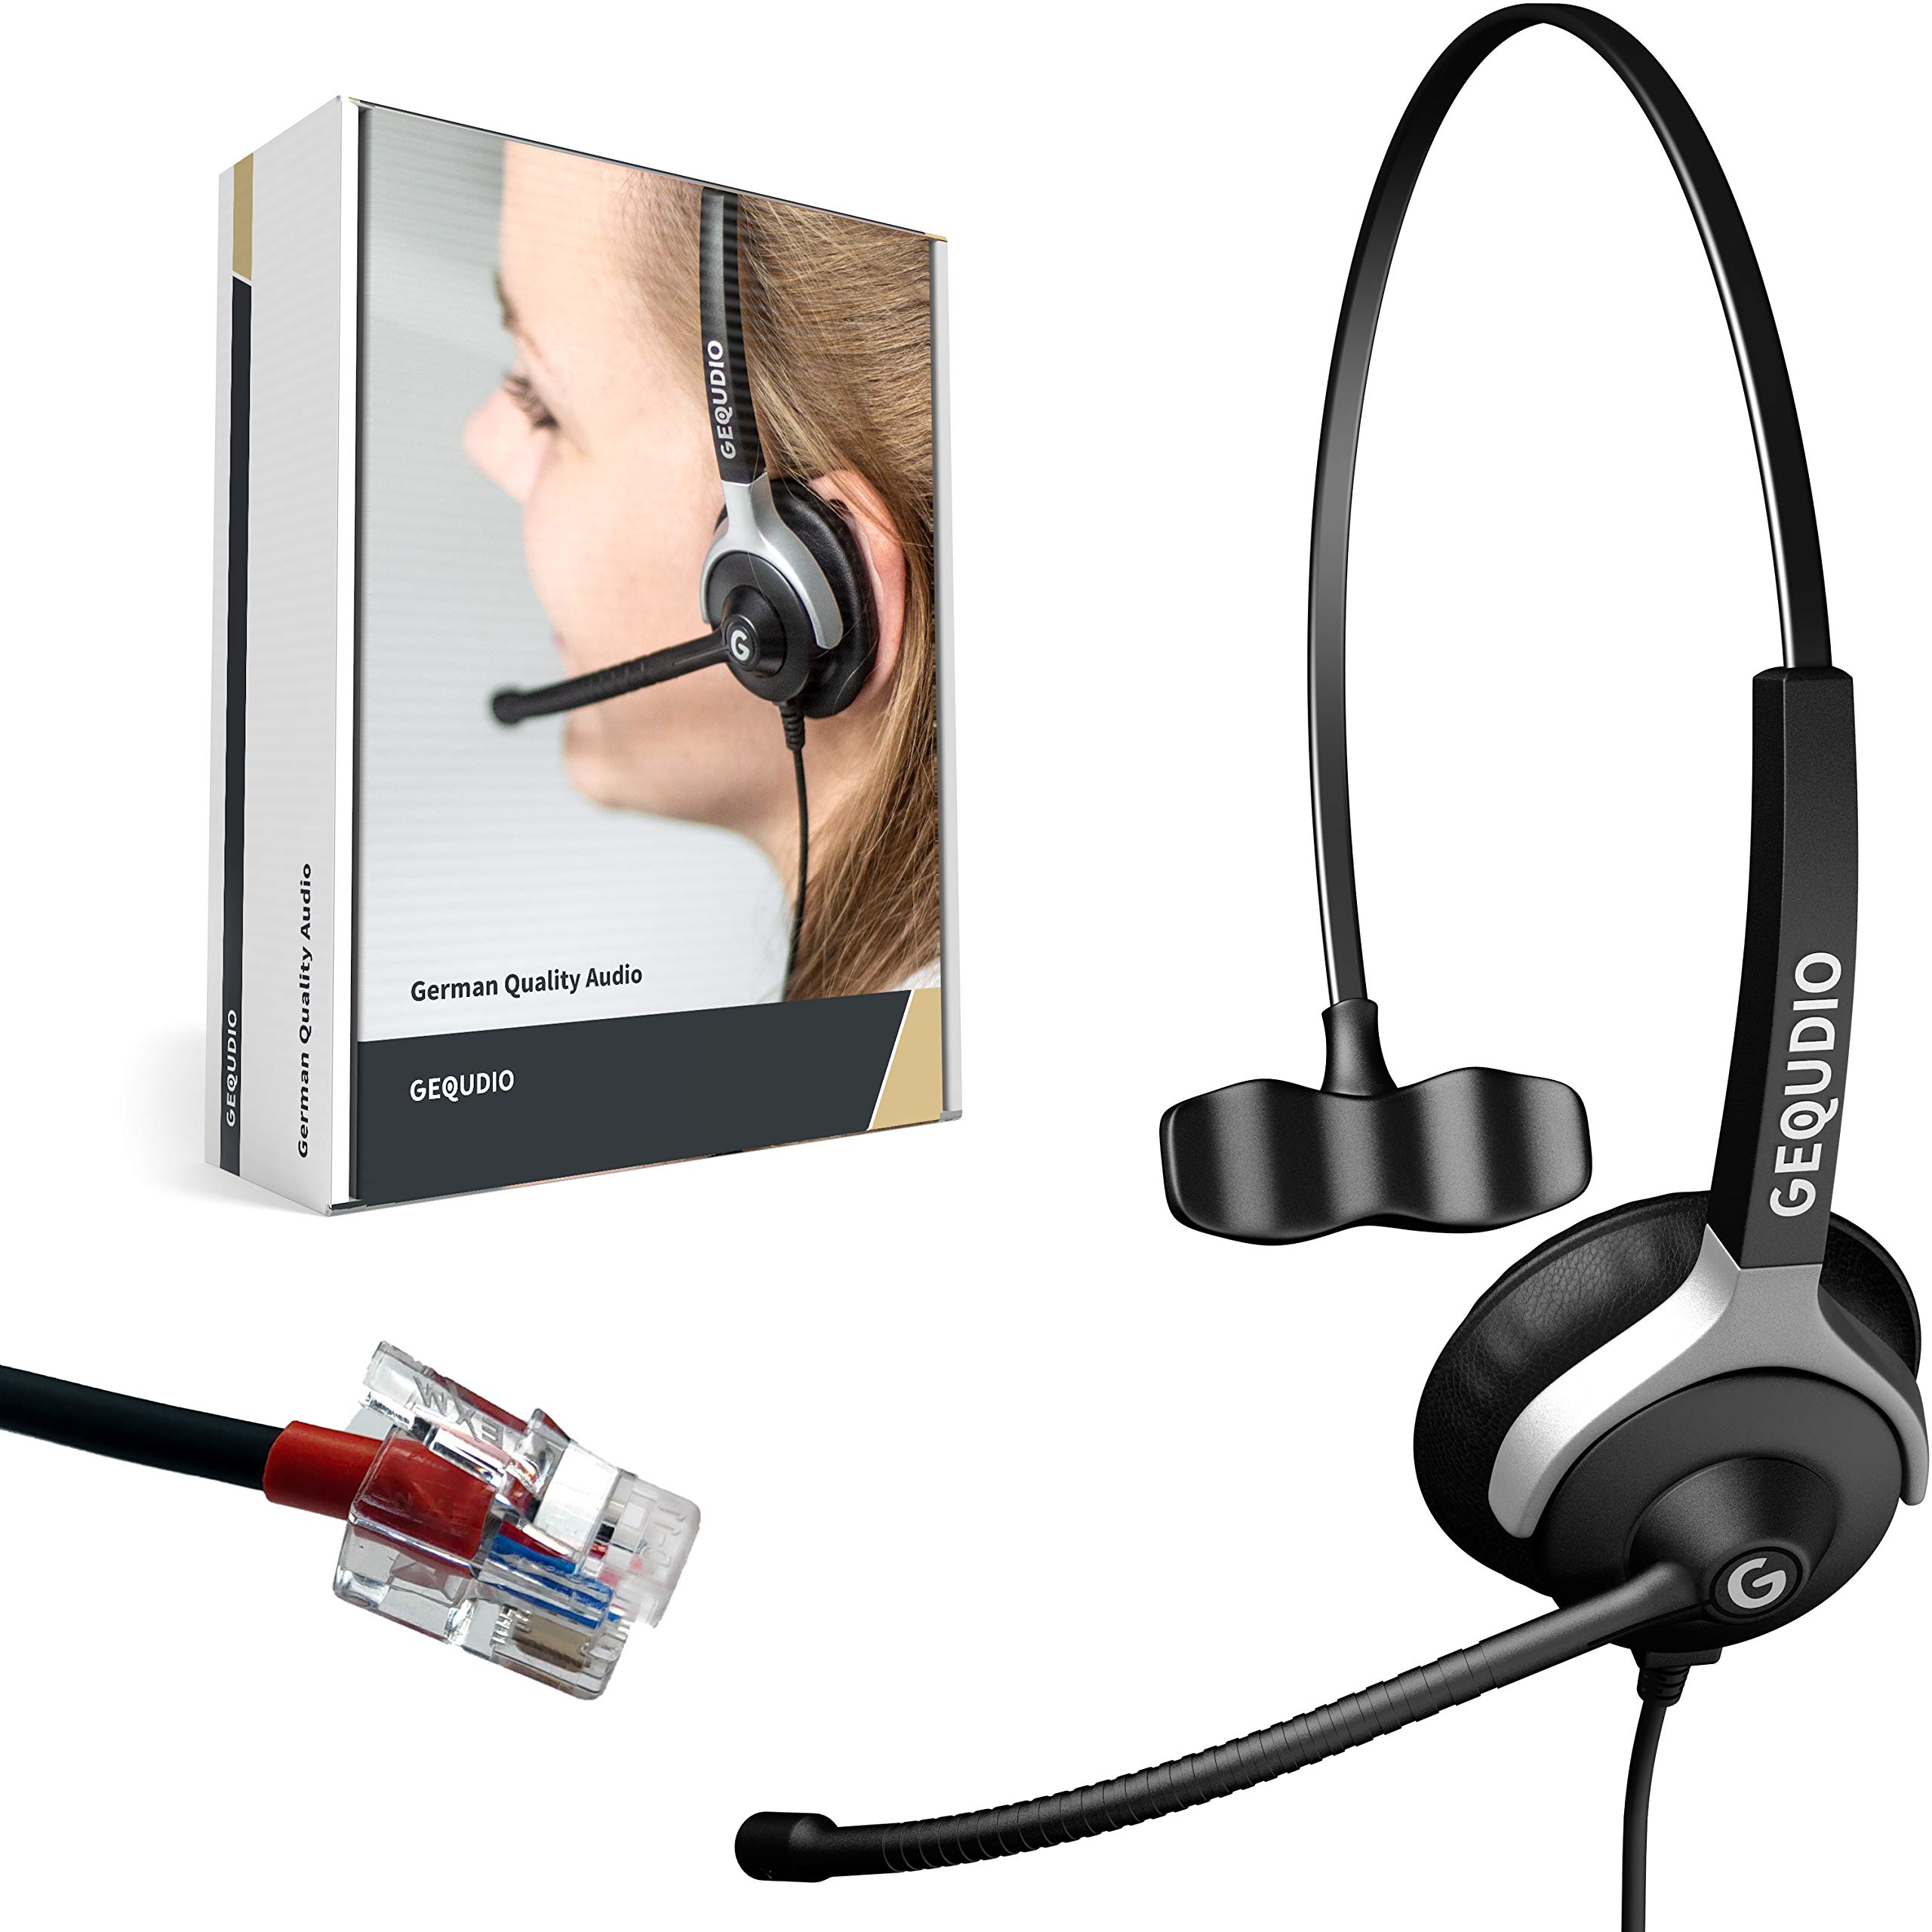 GEQUDIO Headset kompatibel mit Yealink, Snom, Avaya, Grandstream Telefon - inklusive RJ Kabel - Kopfhörer & Mikrofon mit Ersatz Polster - besonders leicht 60g (1-Ohr)